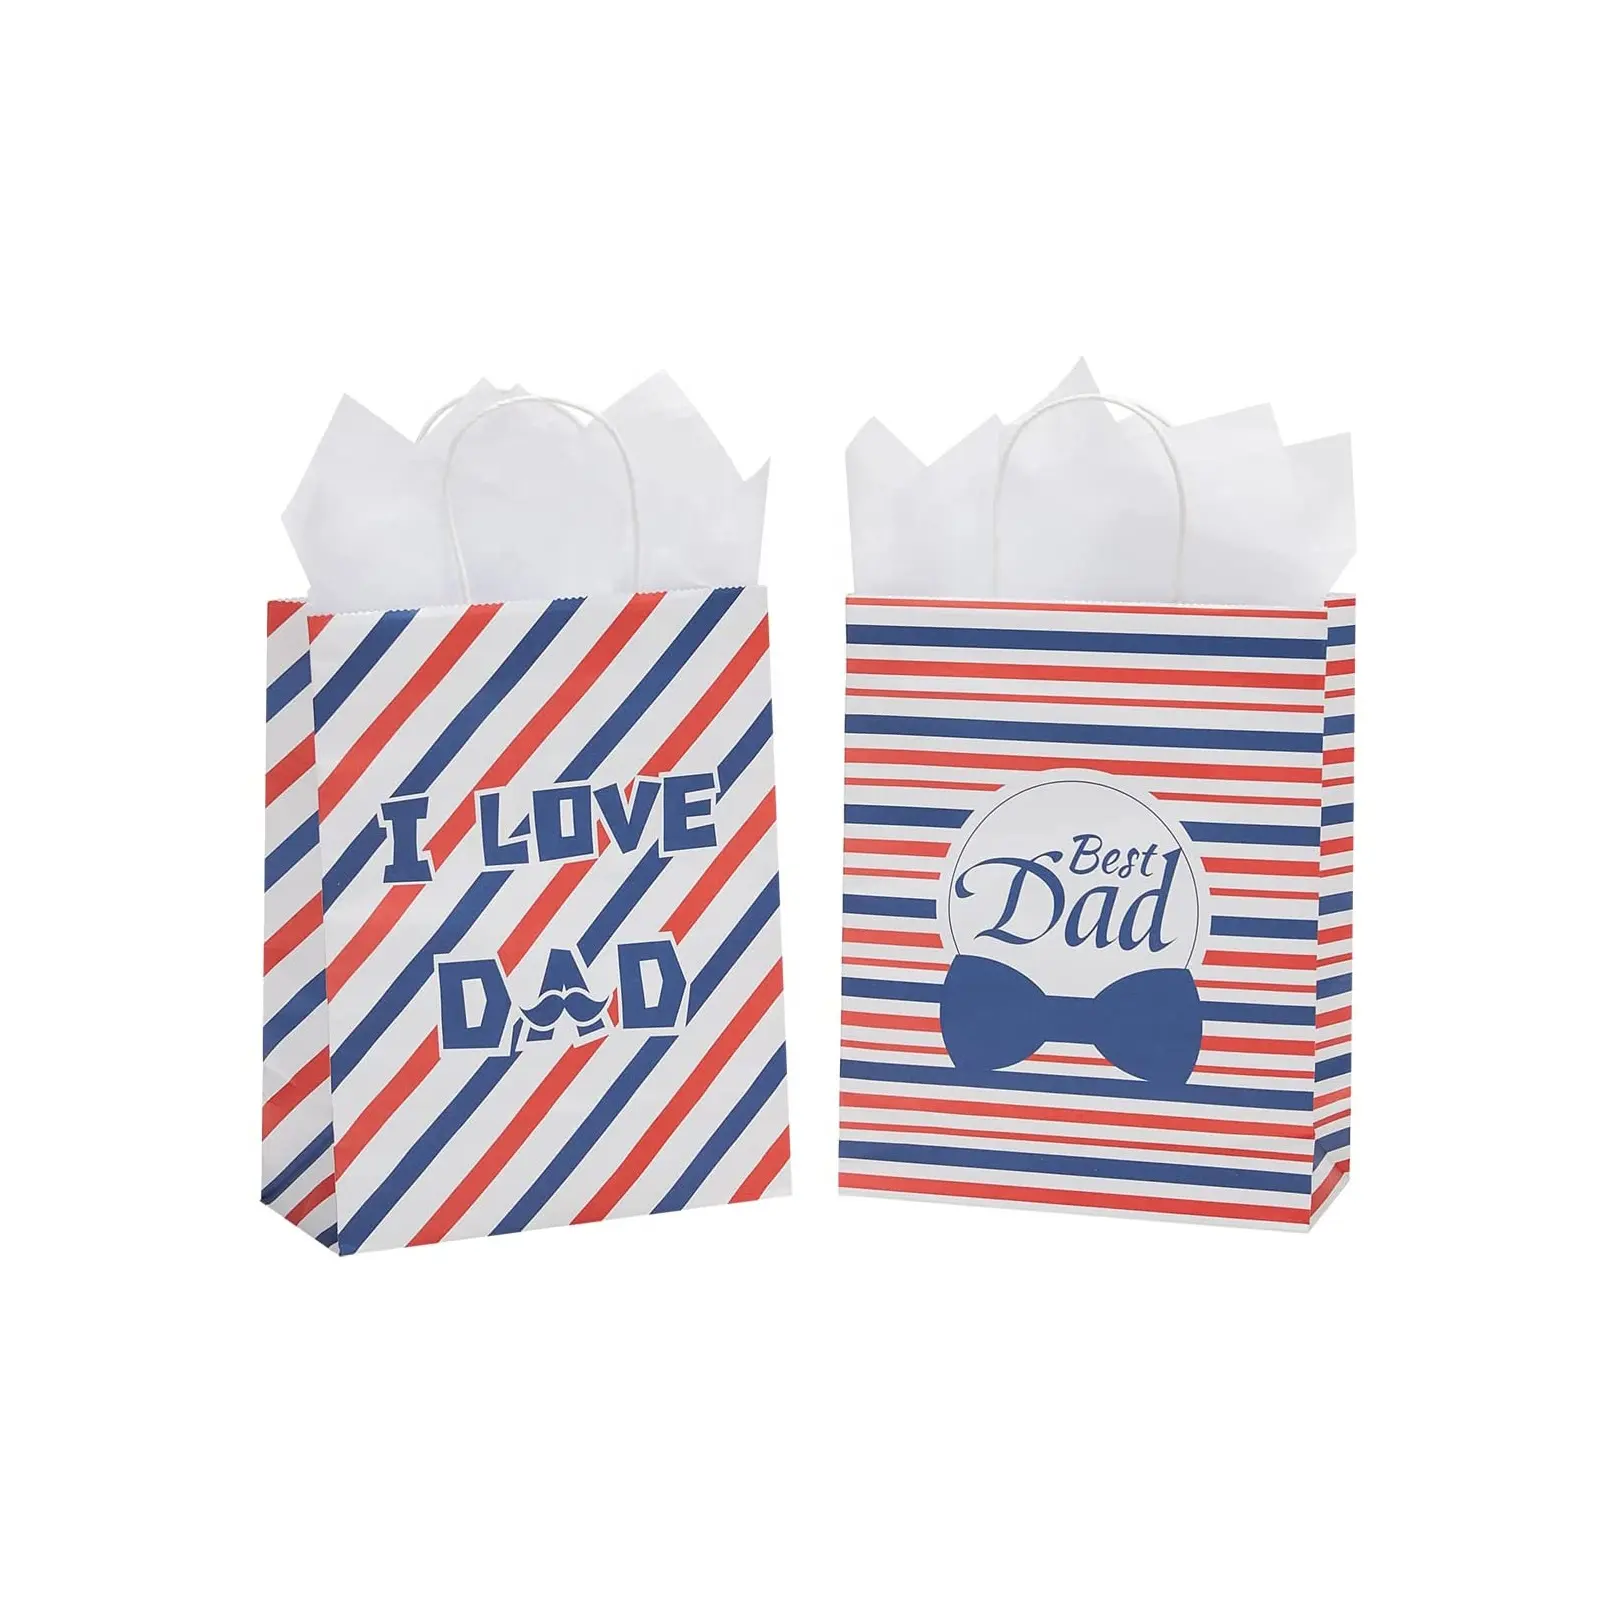 Sacchetti di carta personalizzati piccoli motivi geometrici sacchetti regalo di carta natalizia per feste per la festa del papà e altro ancora